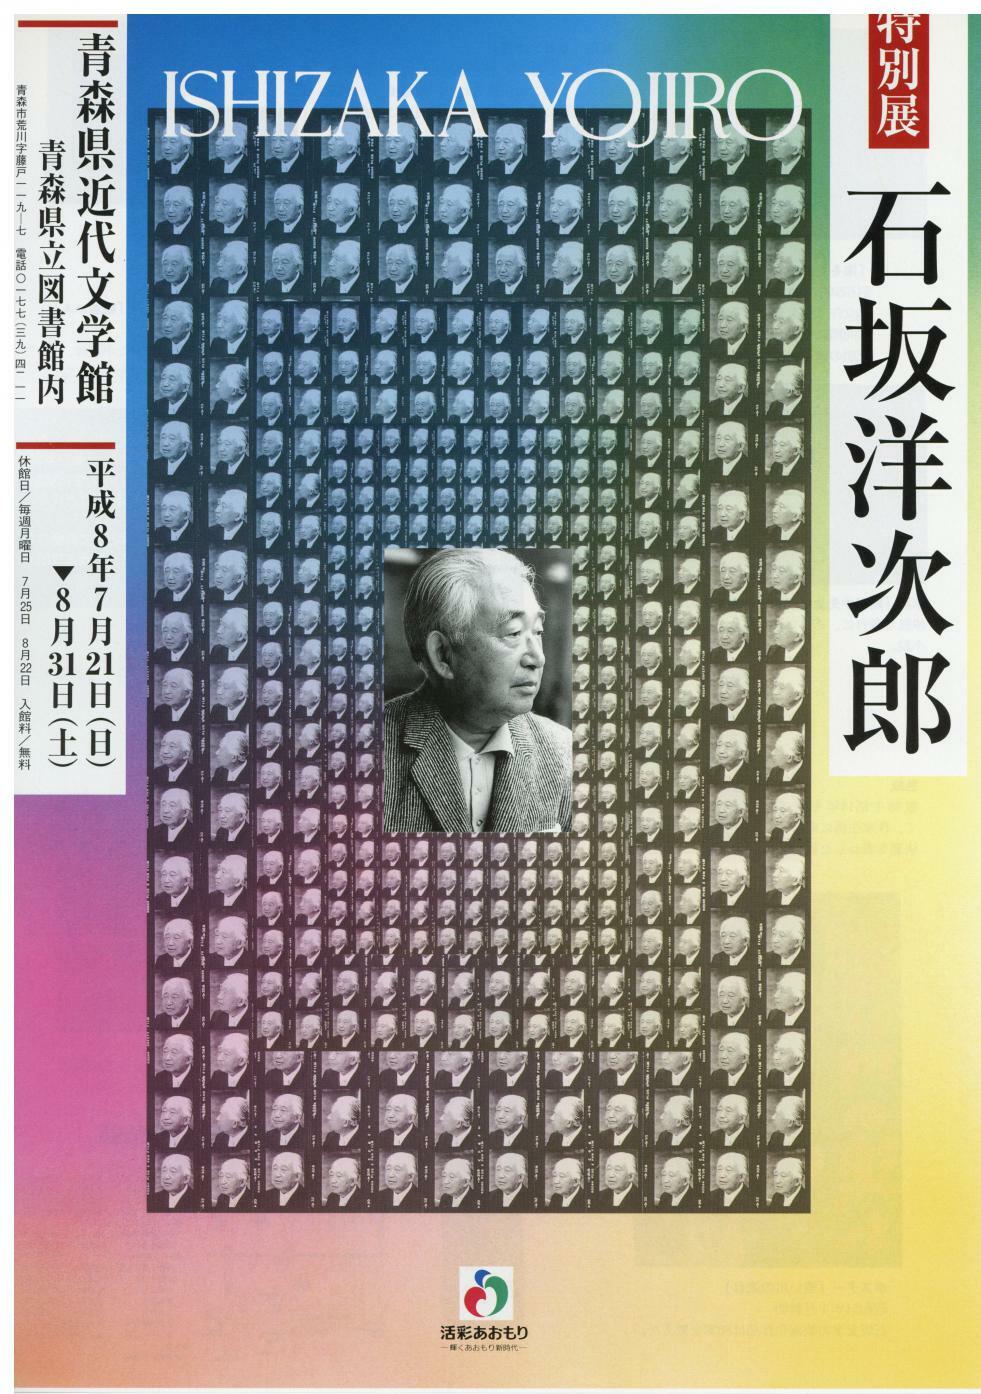 特別展「石坂洋次郎」の画像